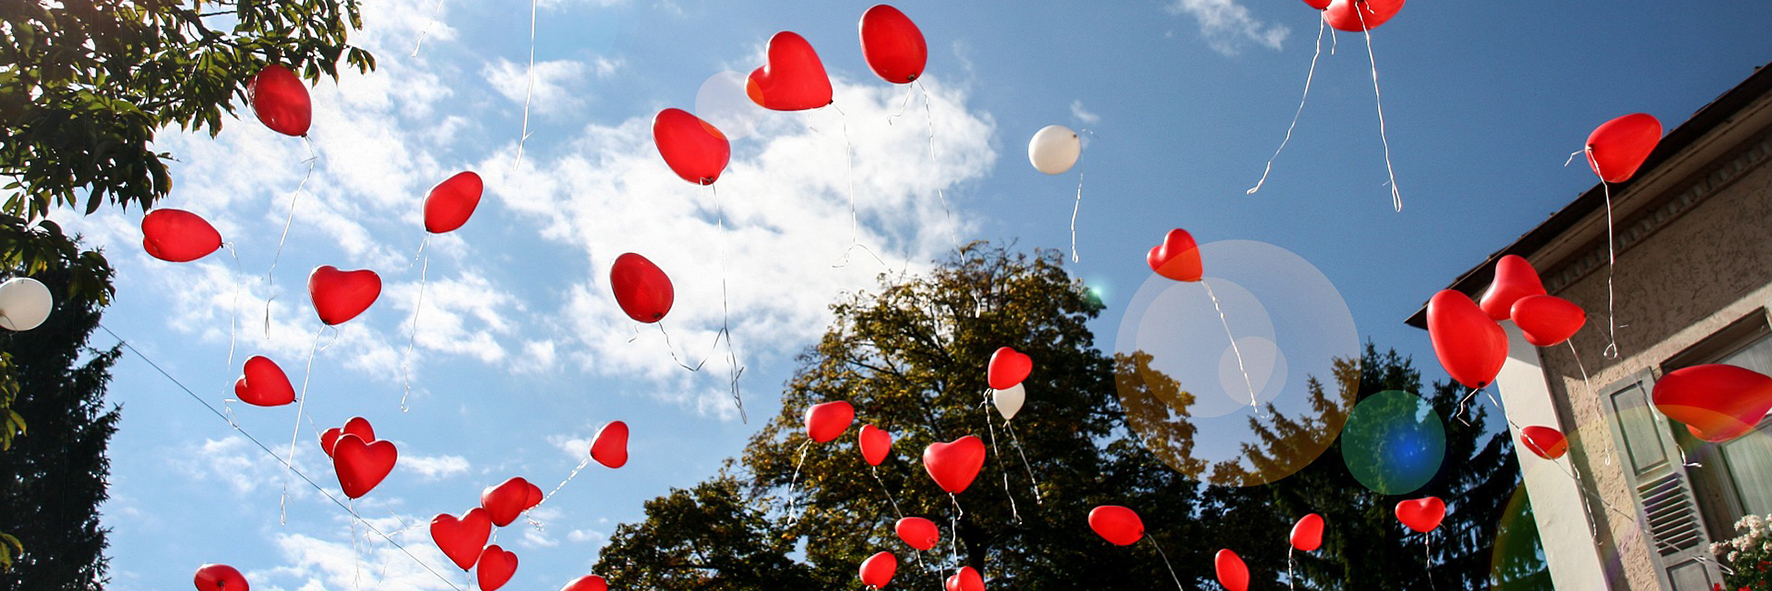 En massa ballonger i form av hjärtan som flyger upp i luften